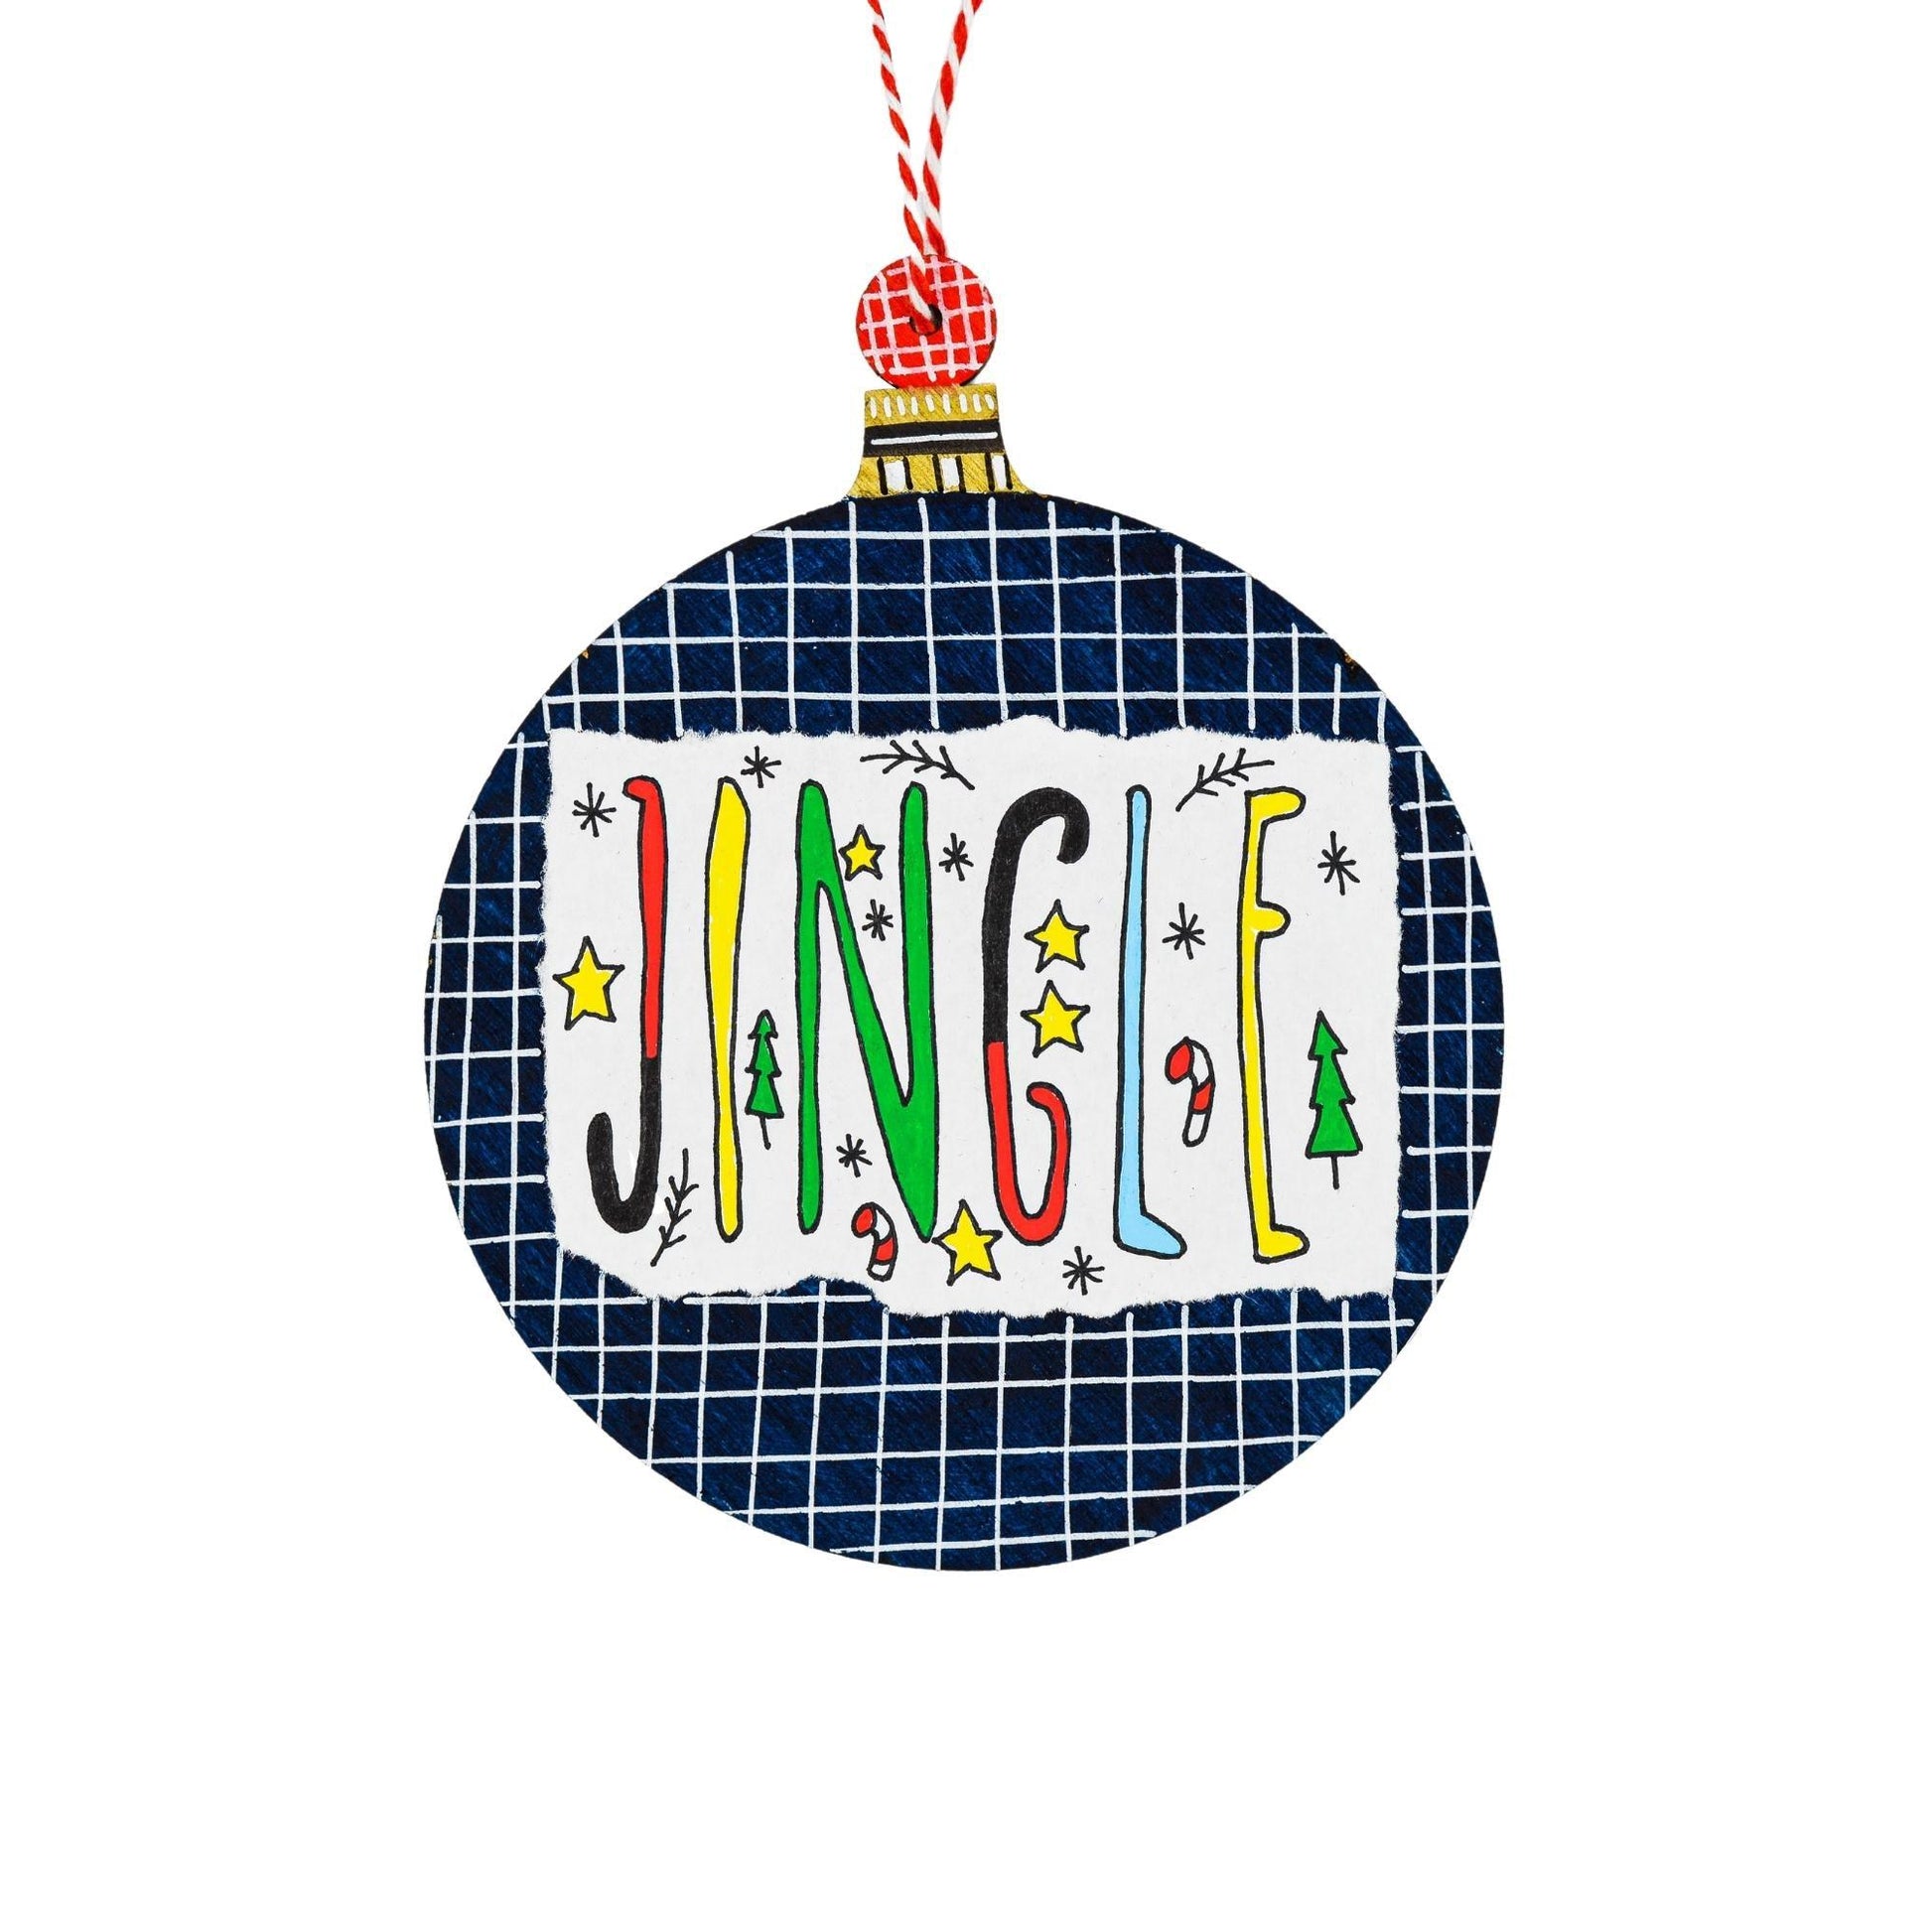 Jingle Dark Blue Wooden Ornament - HeliumProject.gr